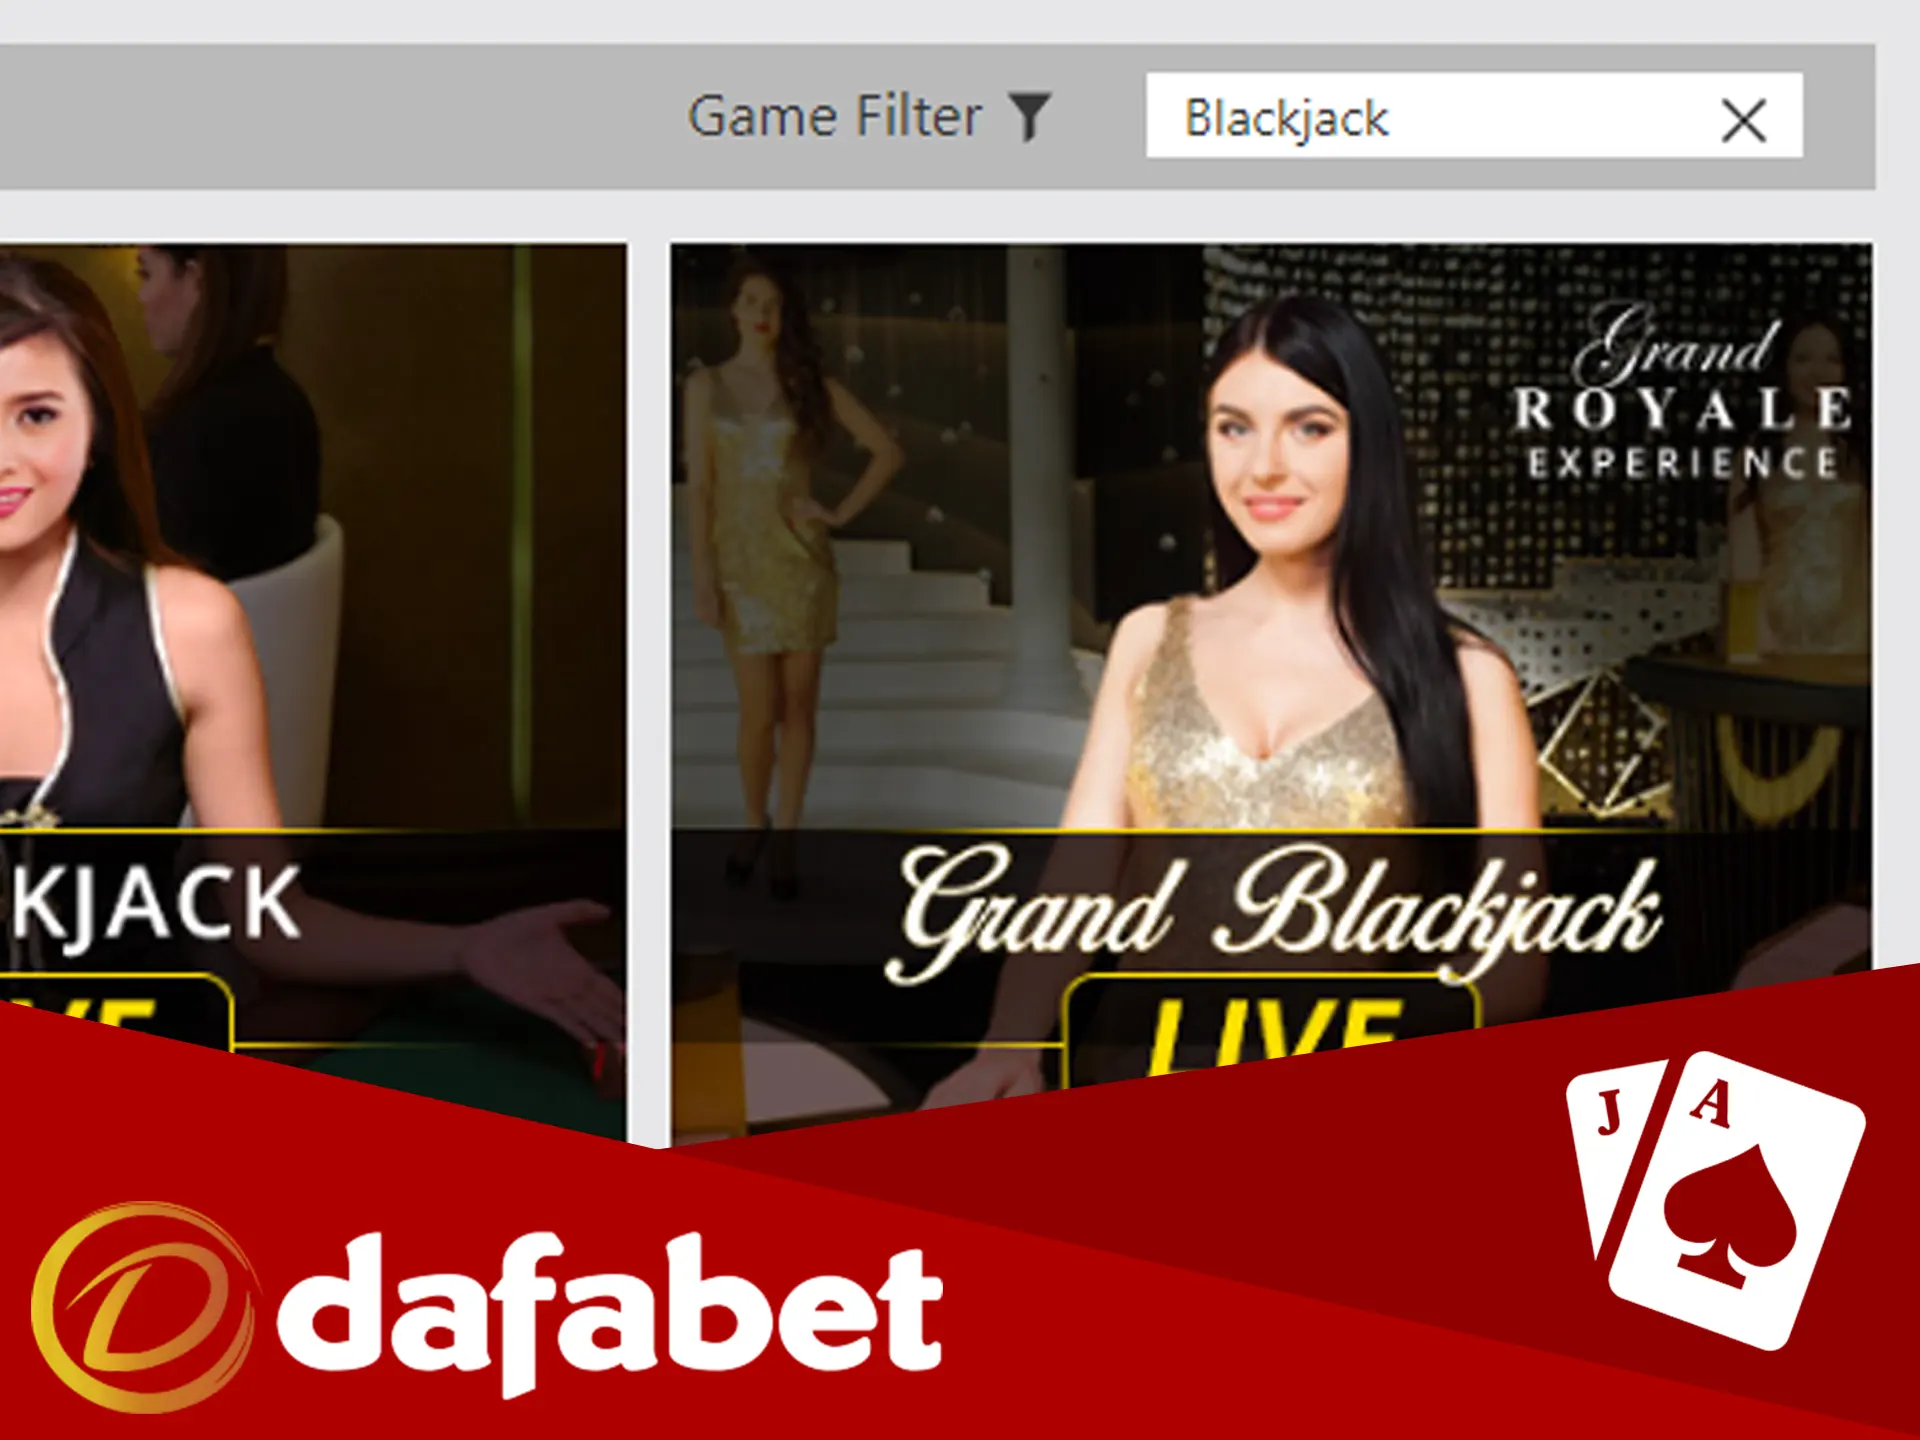 Win big prizes playing Dafabet blackjack games.